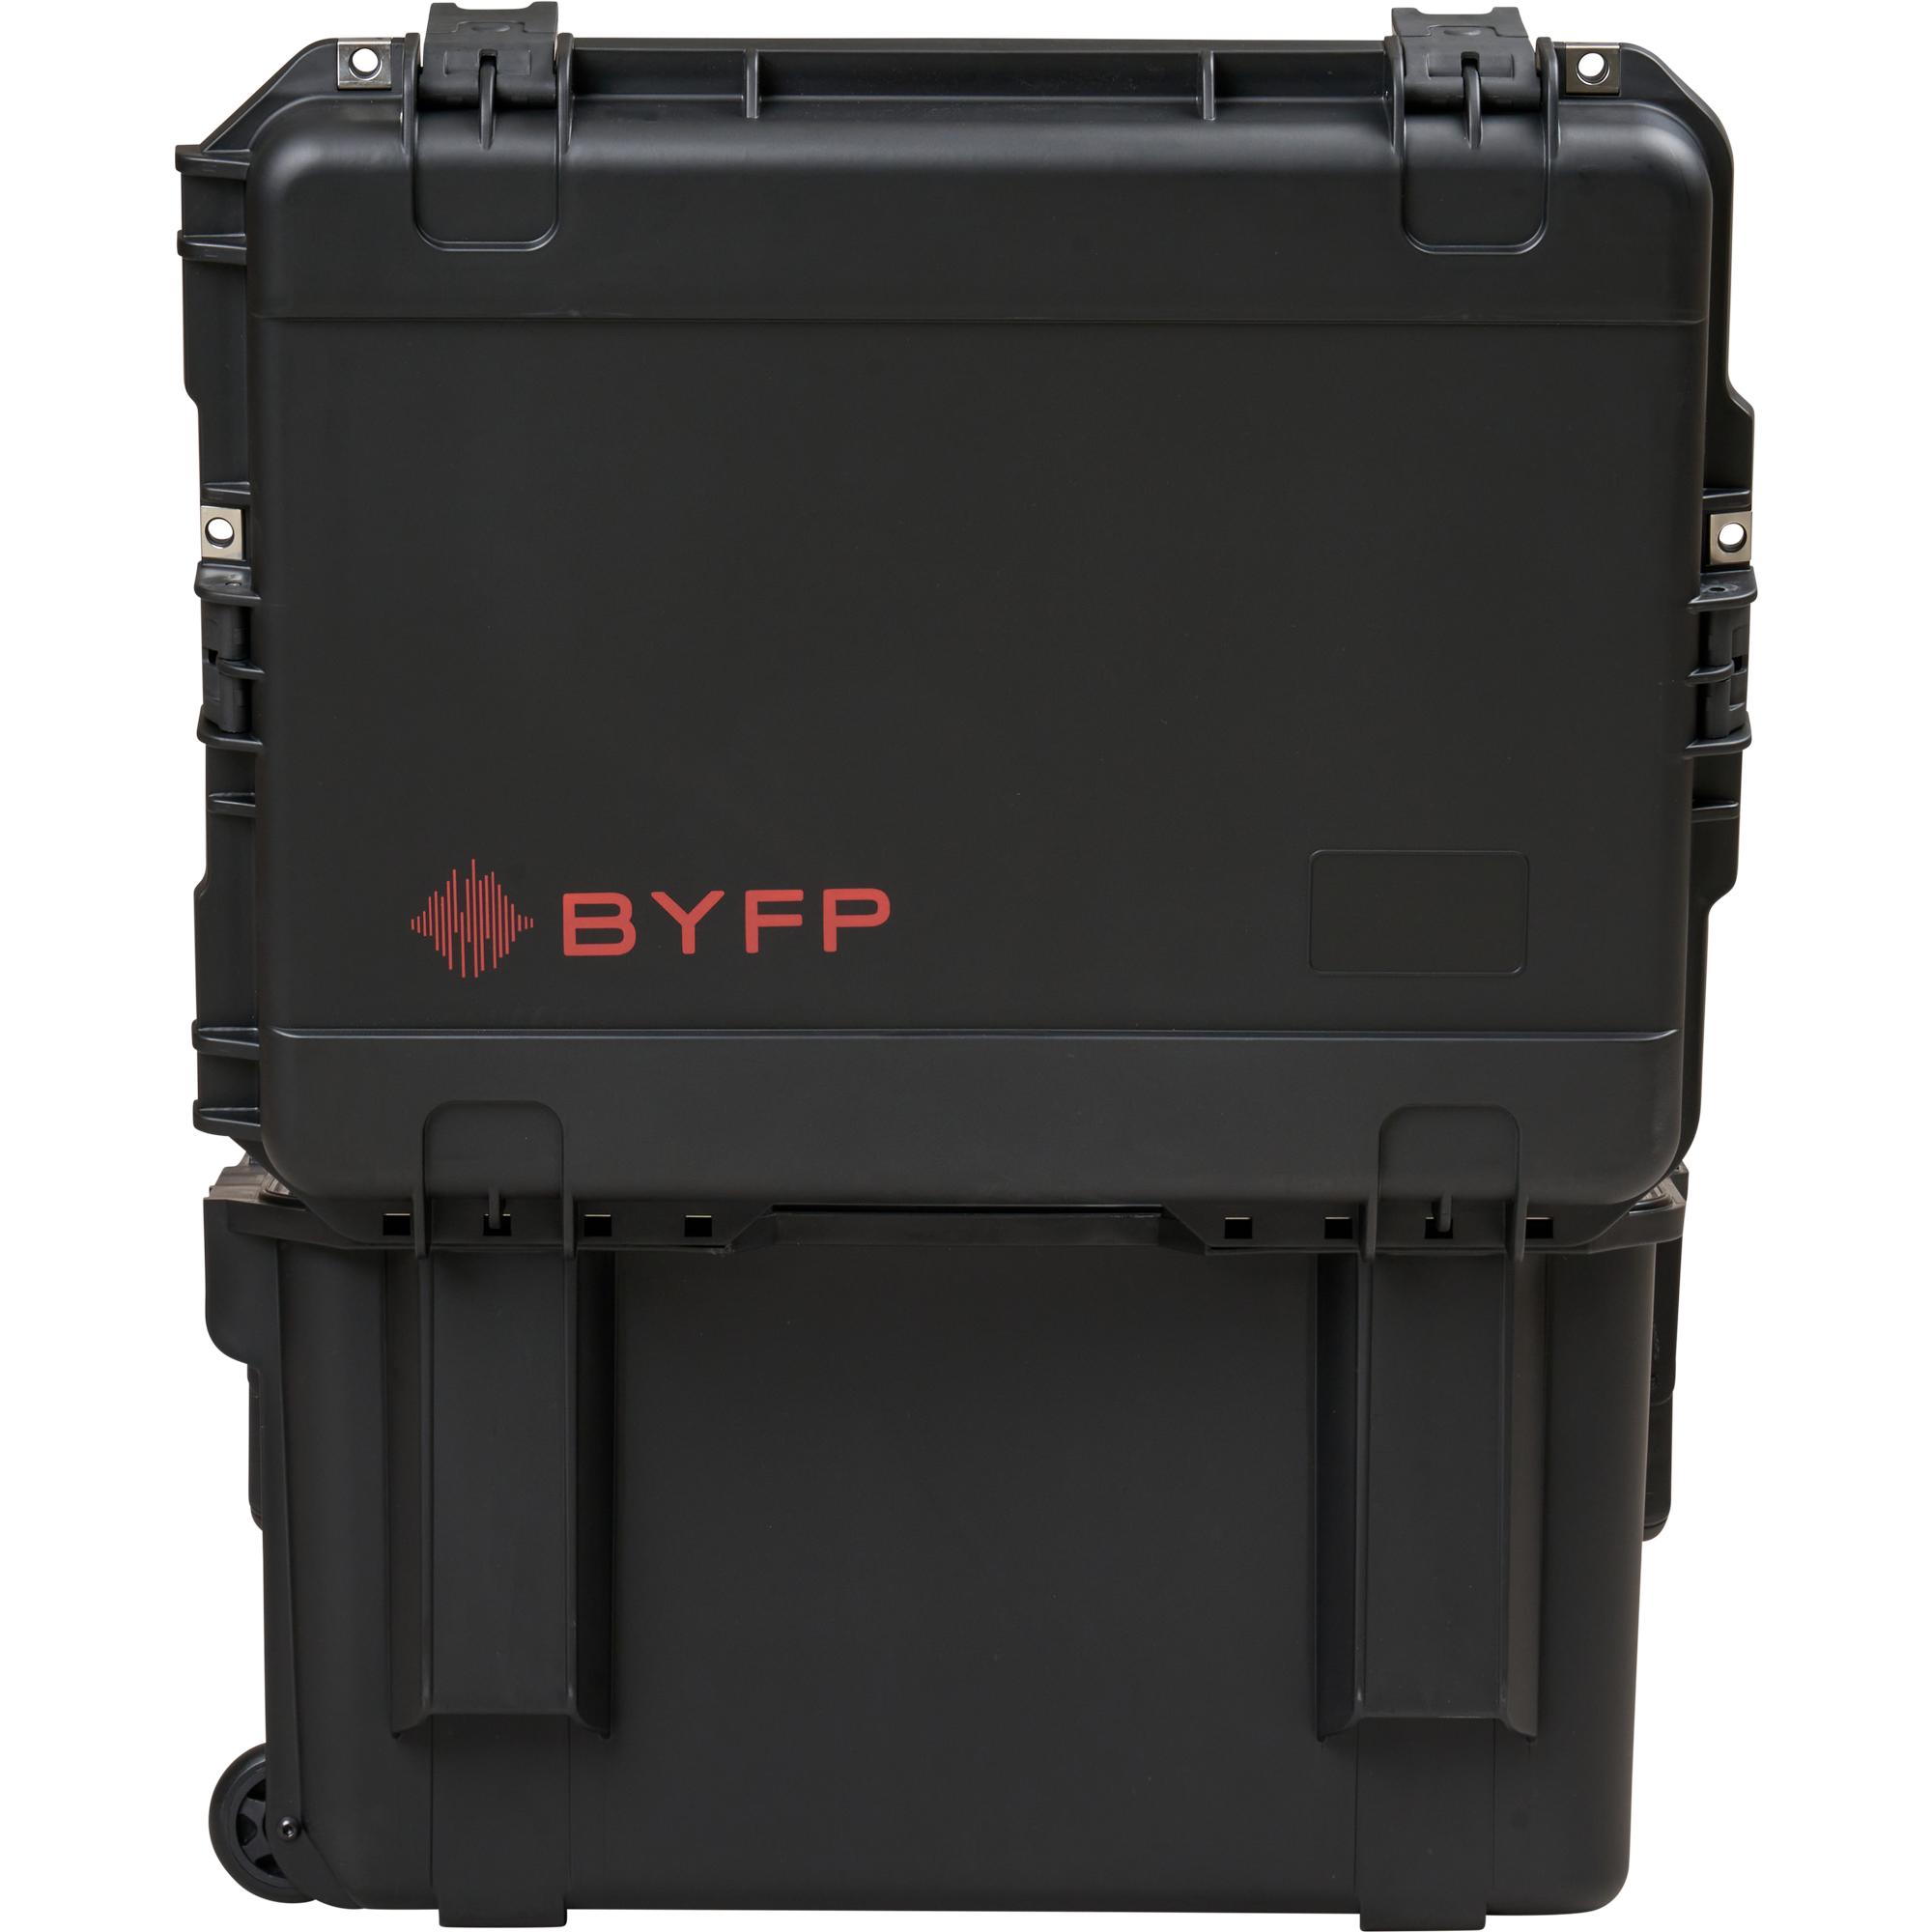 BYFP ipCase for 2x Allen & Heath DX168 Stageboxes